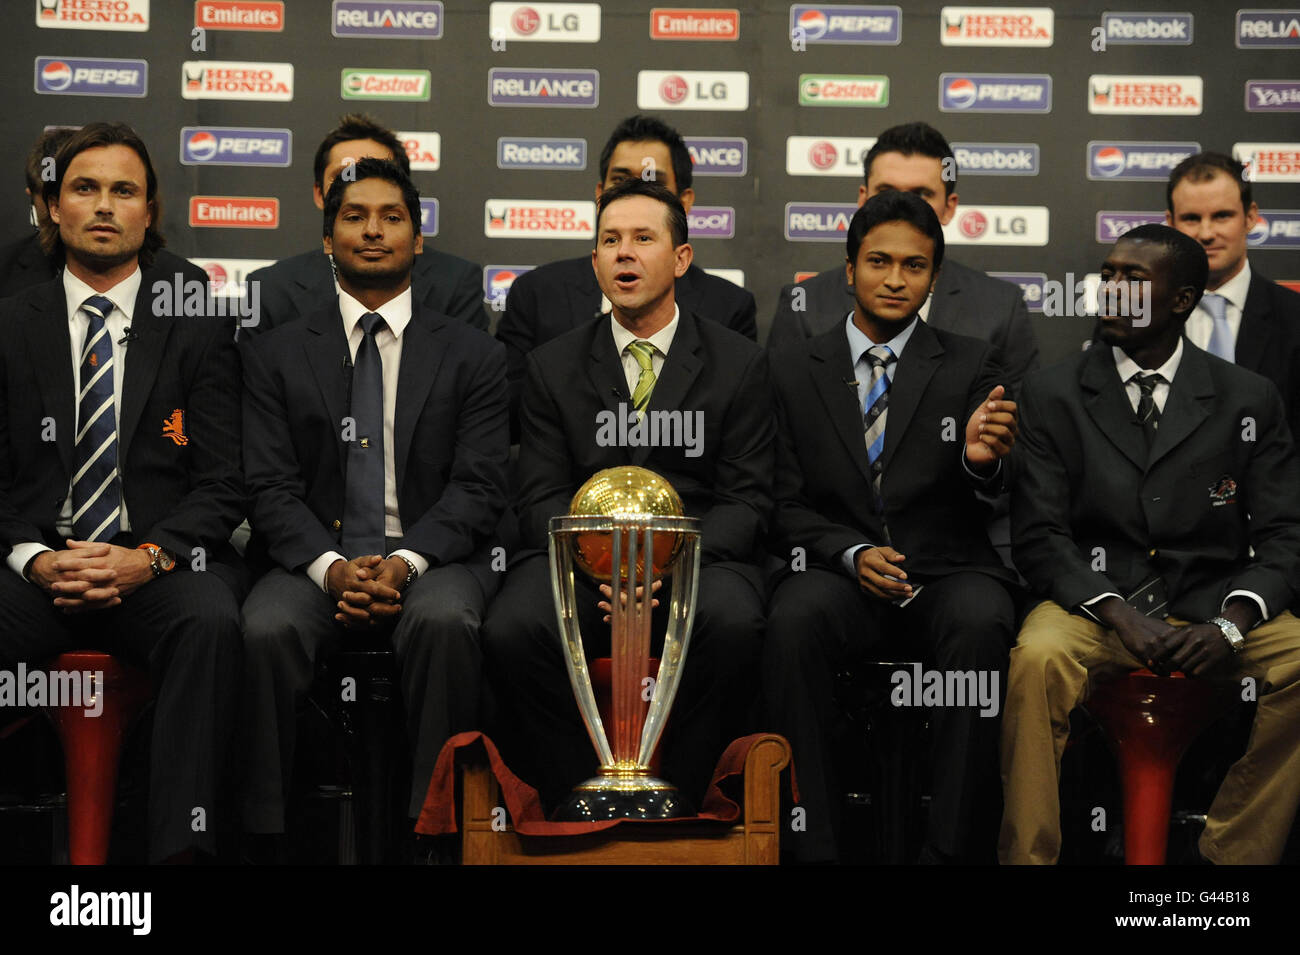 Back Row, da sinistra a destra: Daniel vettori (capitano della Nuova Zelanda), Shahid Afridi (capitano del Pakistan), MS Dhoni (capitano dell'India), Graeme Smith (capitano del Sudafrica), Andrew Strauss (capitano dell'Inghilterra), Front Row: Peter Borren (capitano olandese), Kumar Sangakkara (capitano dello Sri Lanka), Ricky Ponting (capitano australiano) Shakib al Hasan (capitano del Bangladesh), Jimmy Kamande (capitano del Kenya) con il trofeo Coppa del mondo di Cricket, durante una conferenza stampa presso l'hotel Teams di Dhaka, Bangladesh. Foto Stock